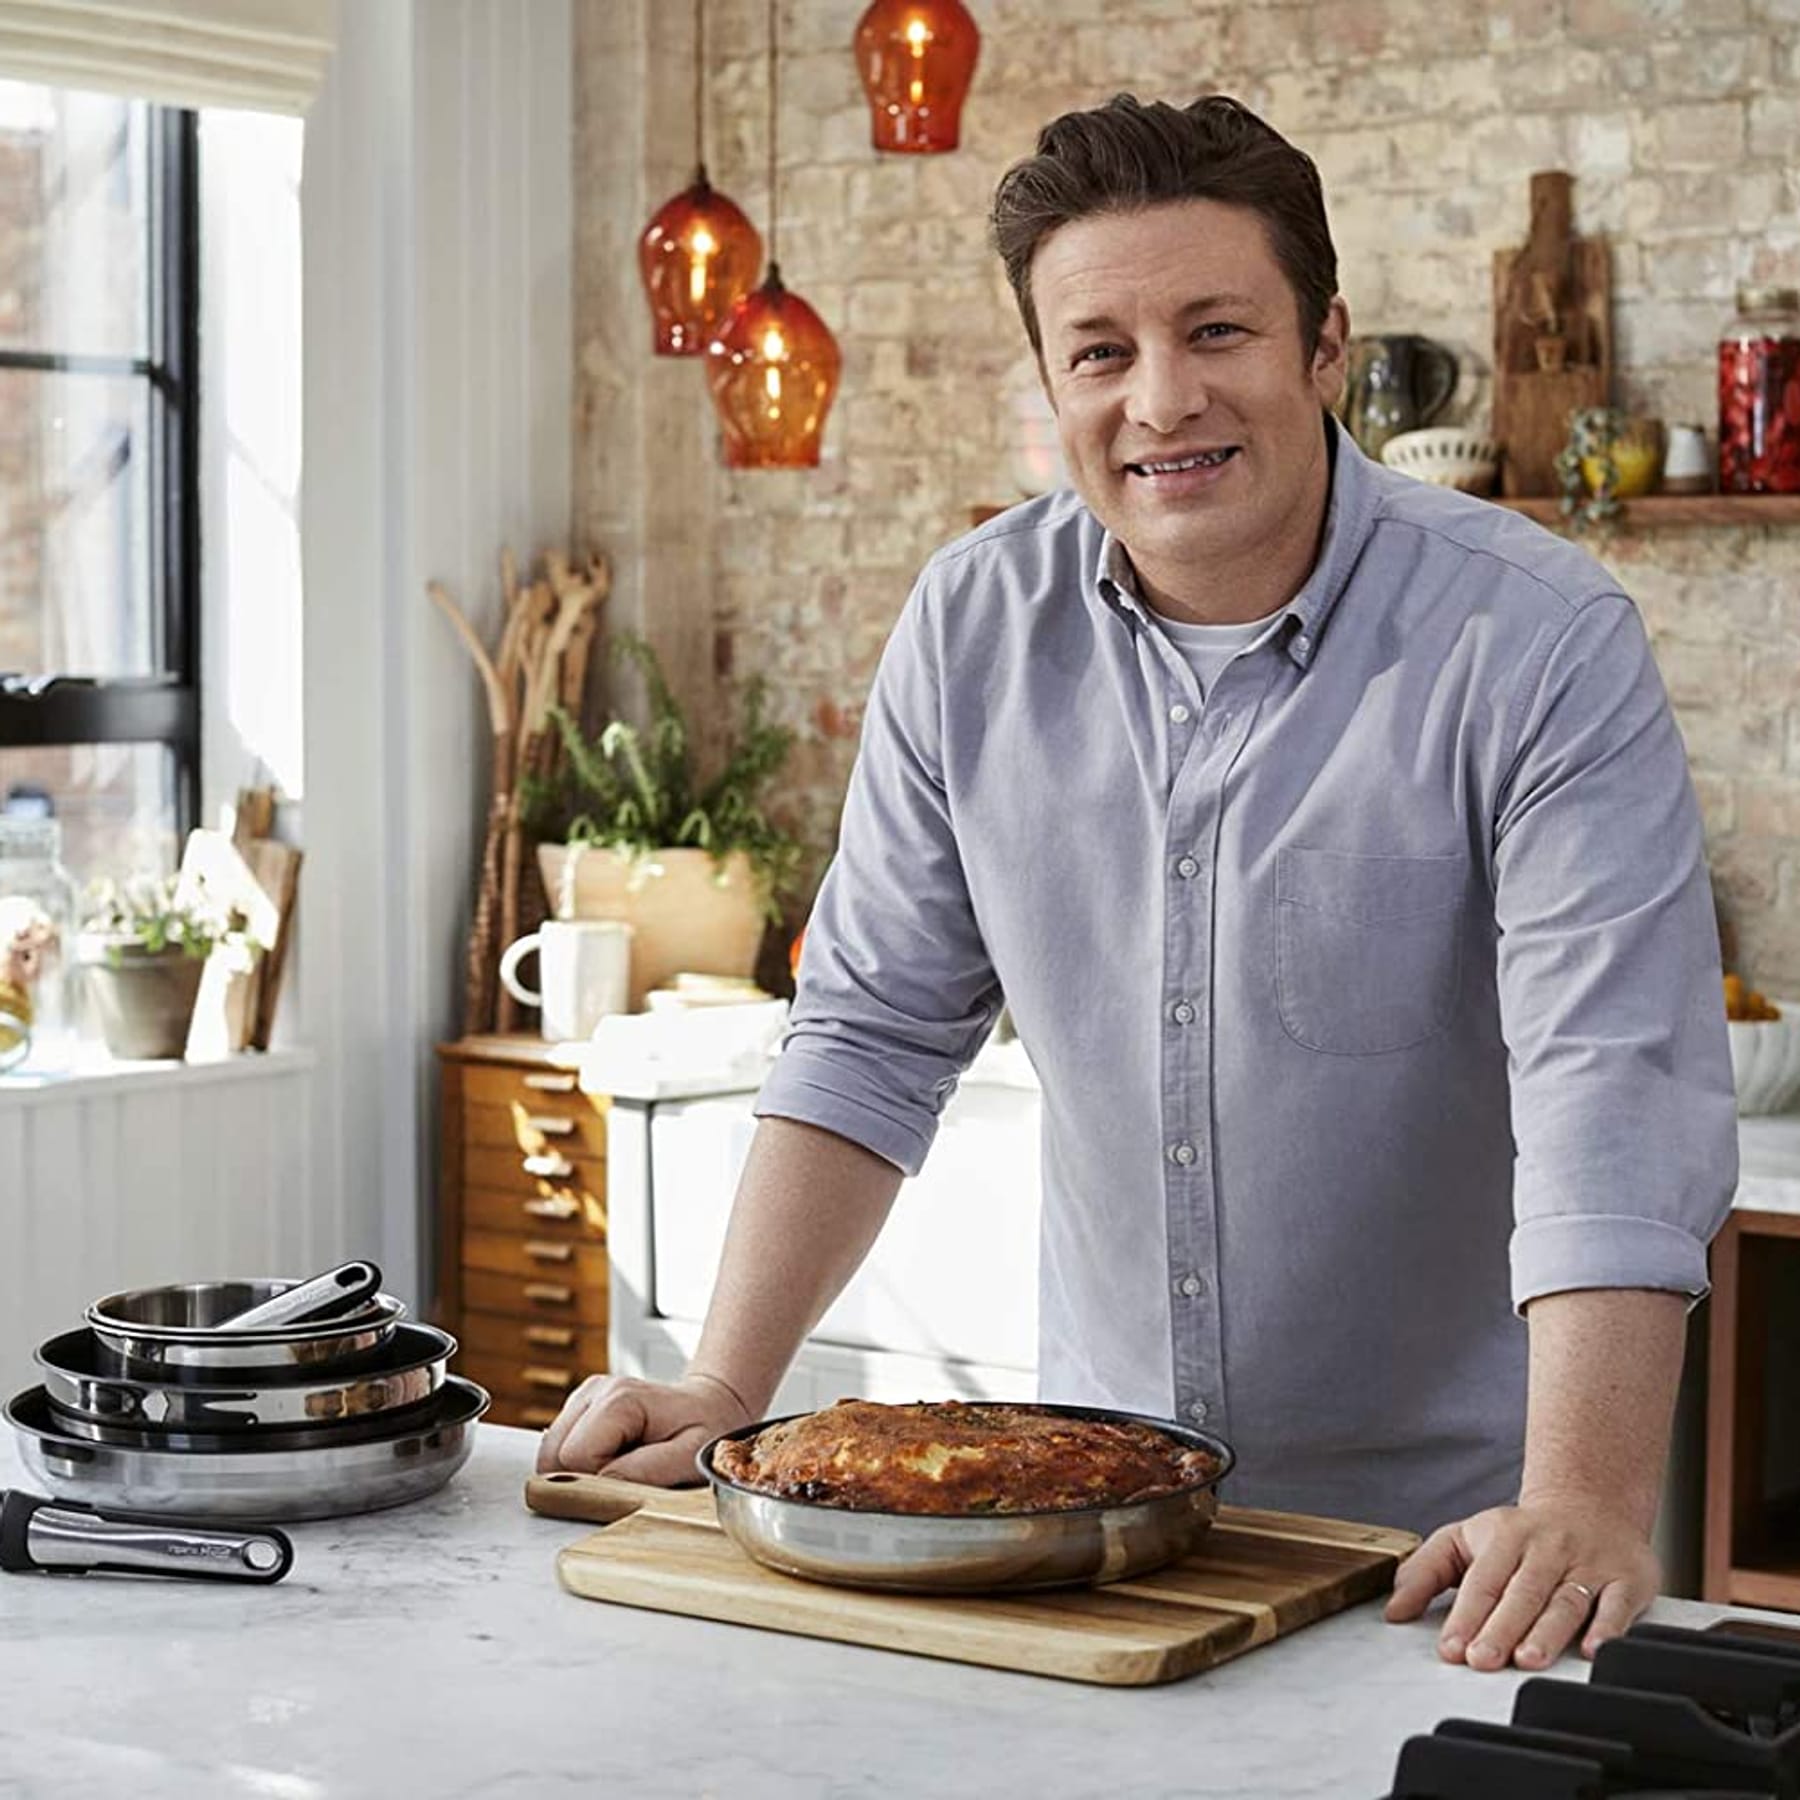 Unter 100 Euro! Jamie Oliver Pfannen von Tefal günstig wie nie bei Amazon